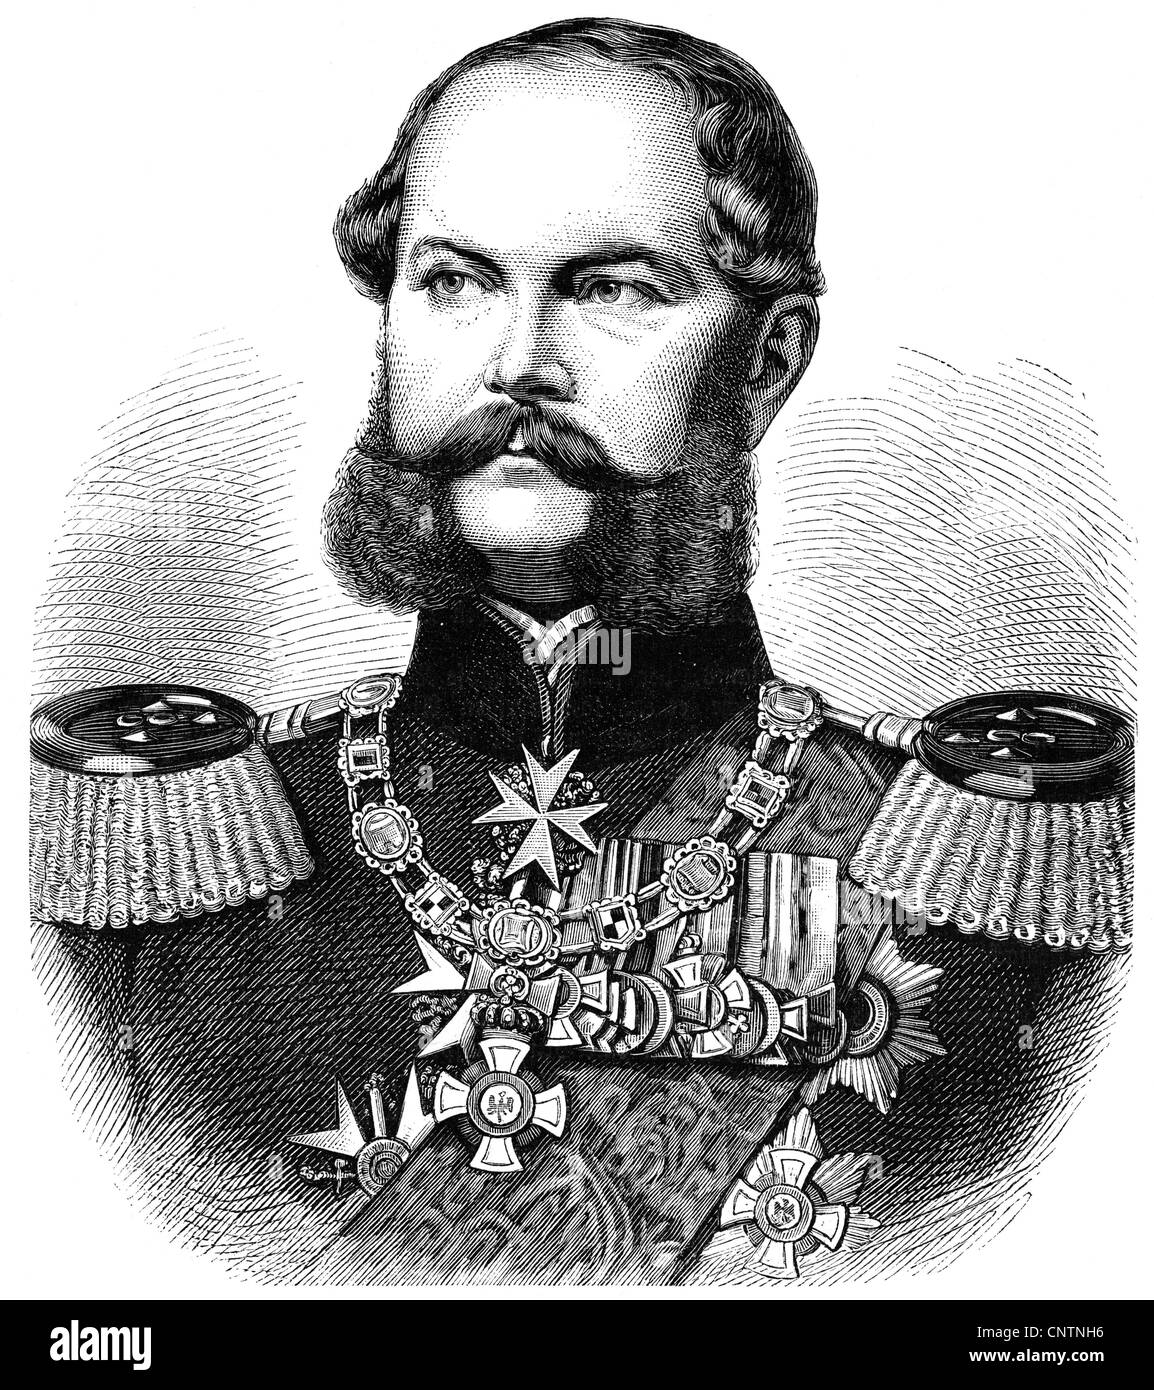 Carlo, 29.6.1801 - 21.1.1883, Principe di Prussia, generale prussiano, ritratto, incisione in legno, circa 1870, Foto Stock